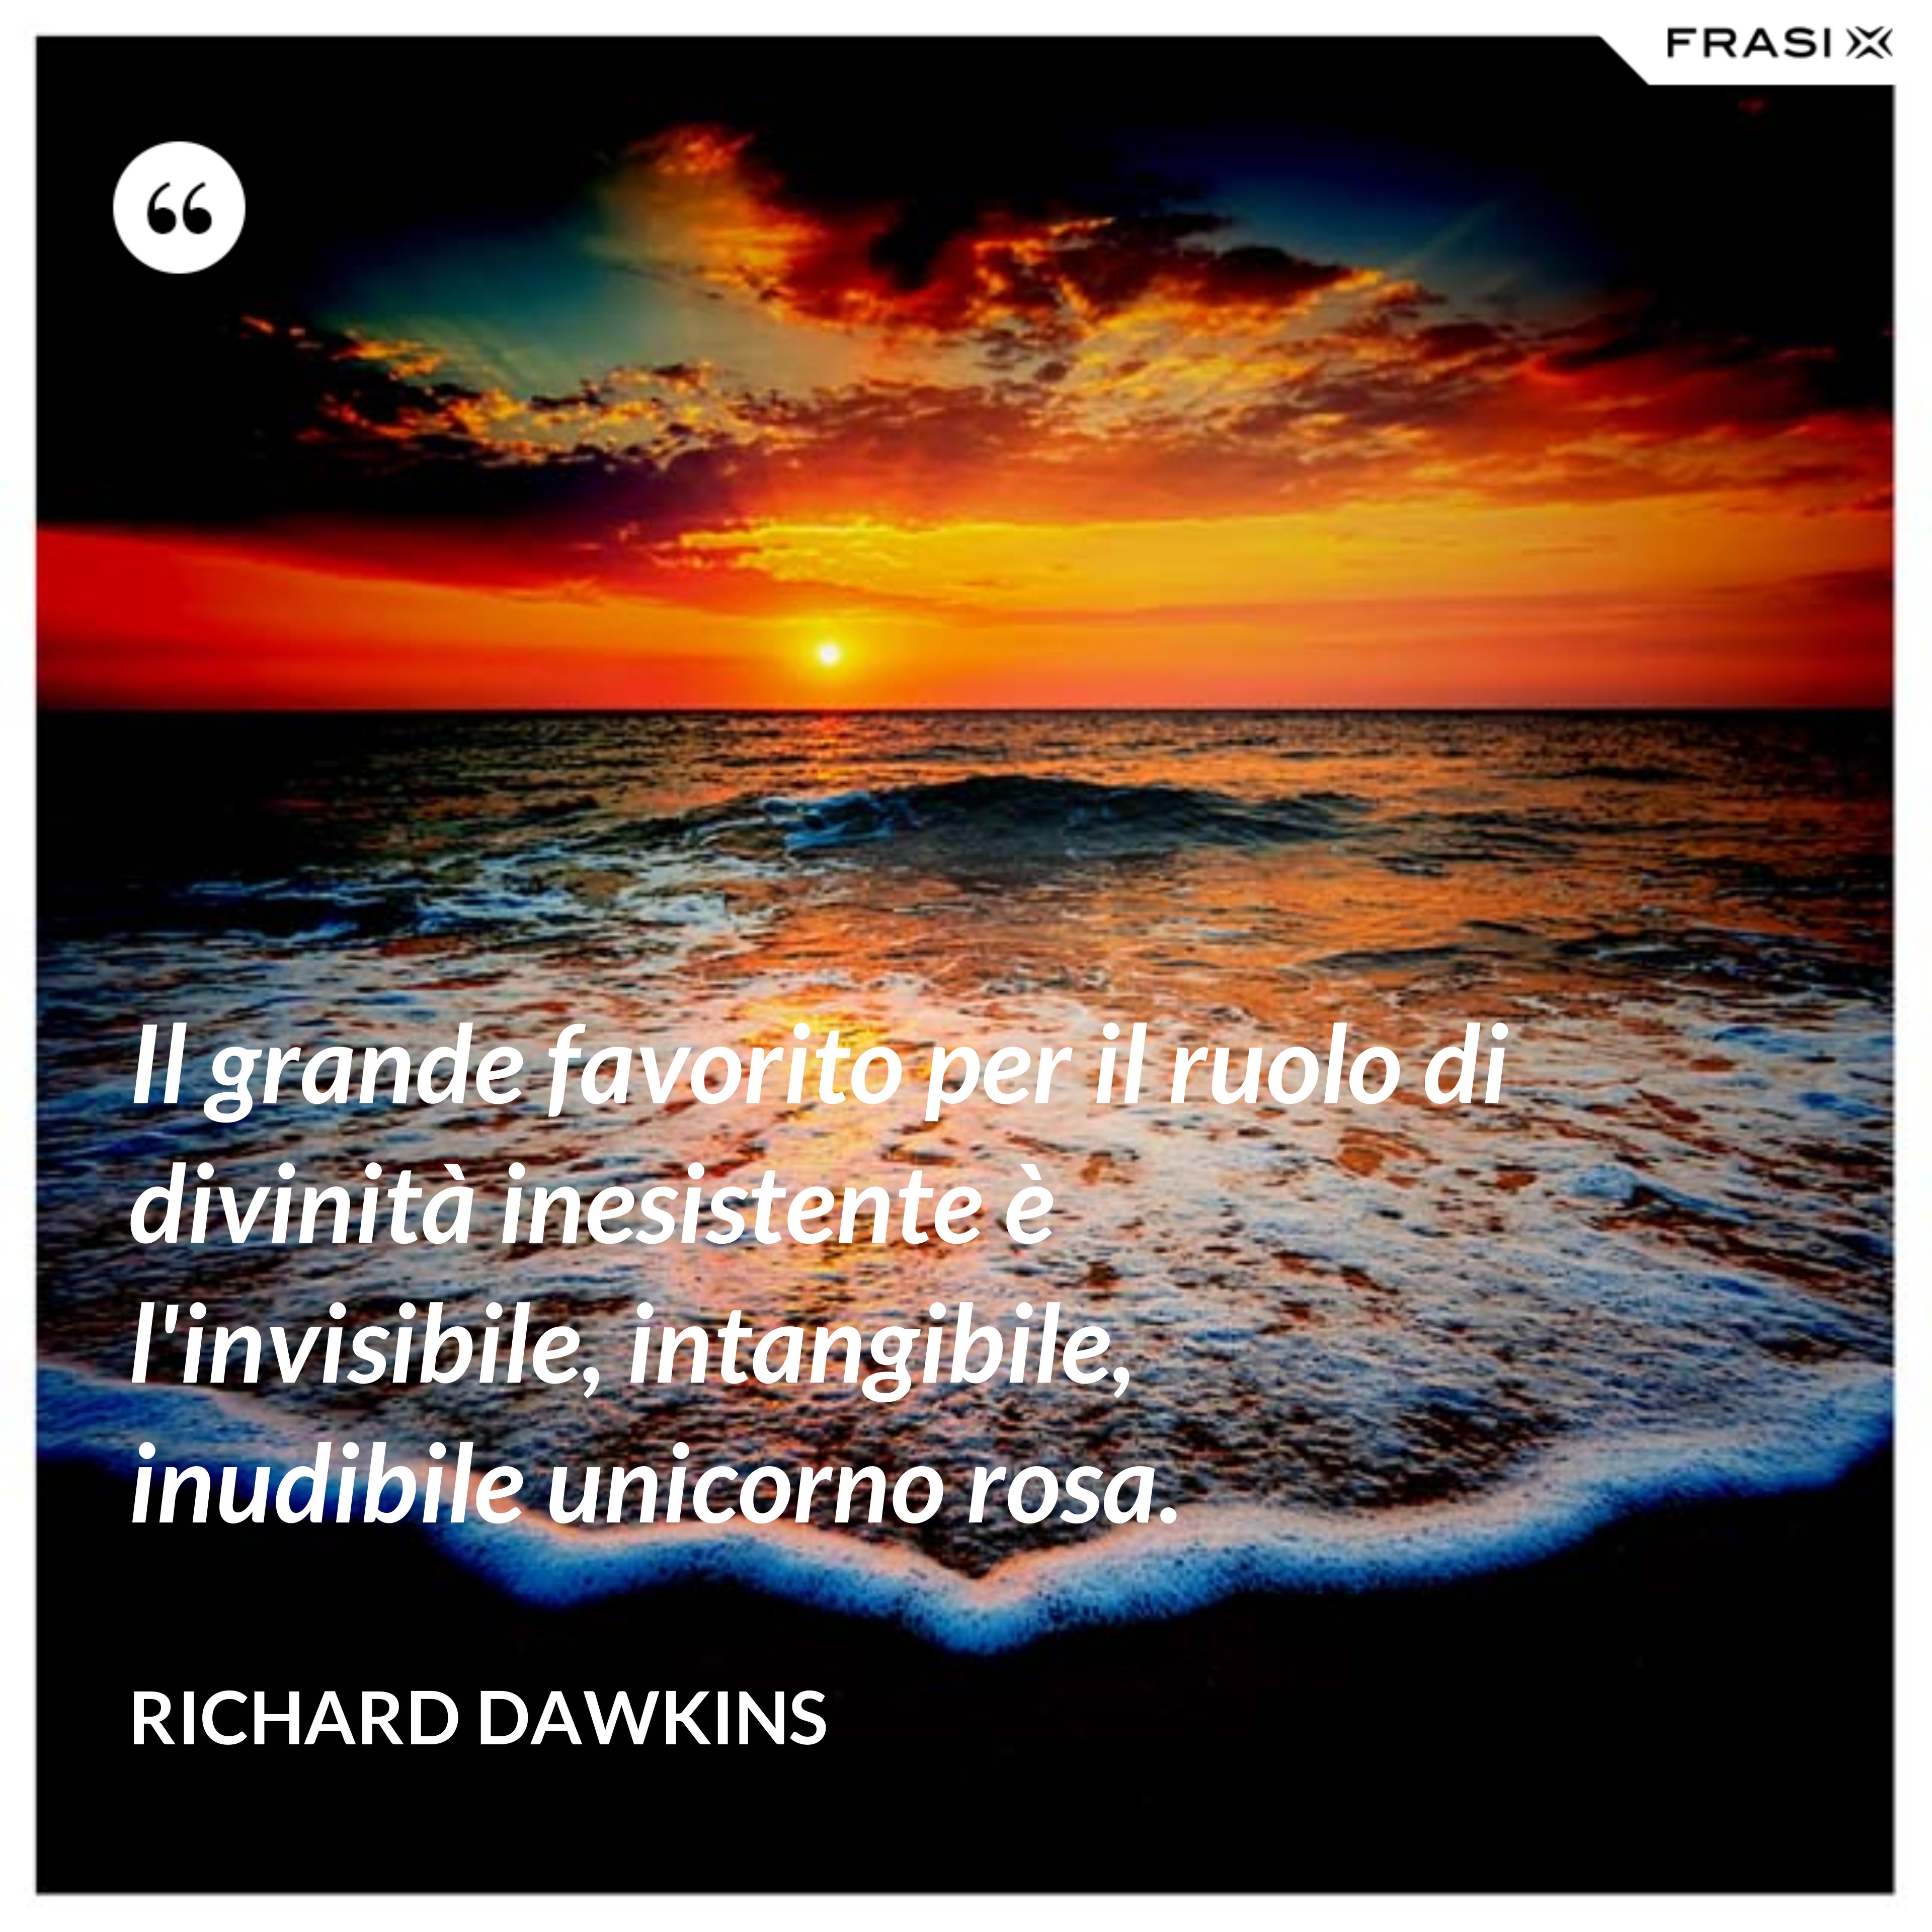 Il grande favorito per il ruolo di divinità inesistente è l'invisibile, intangibile, inudibile unicorno rosa. - Richard Dawkins